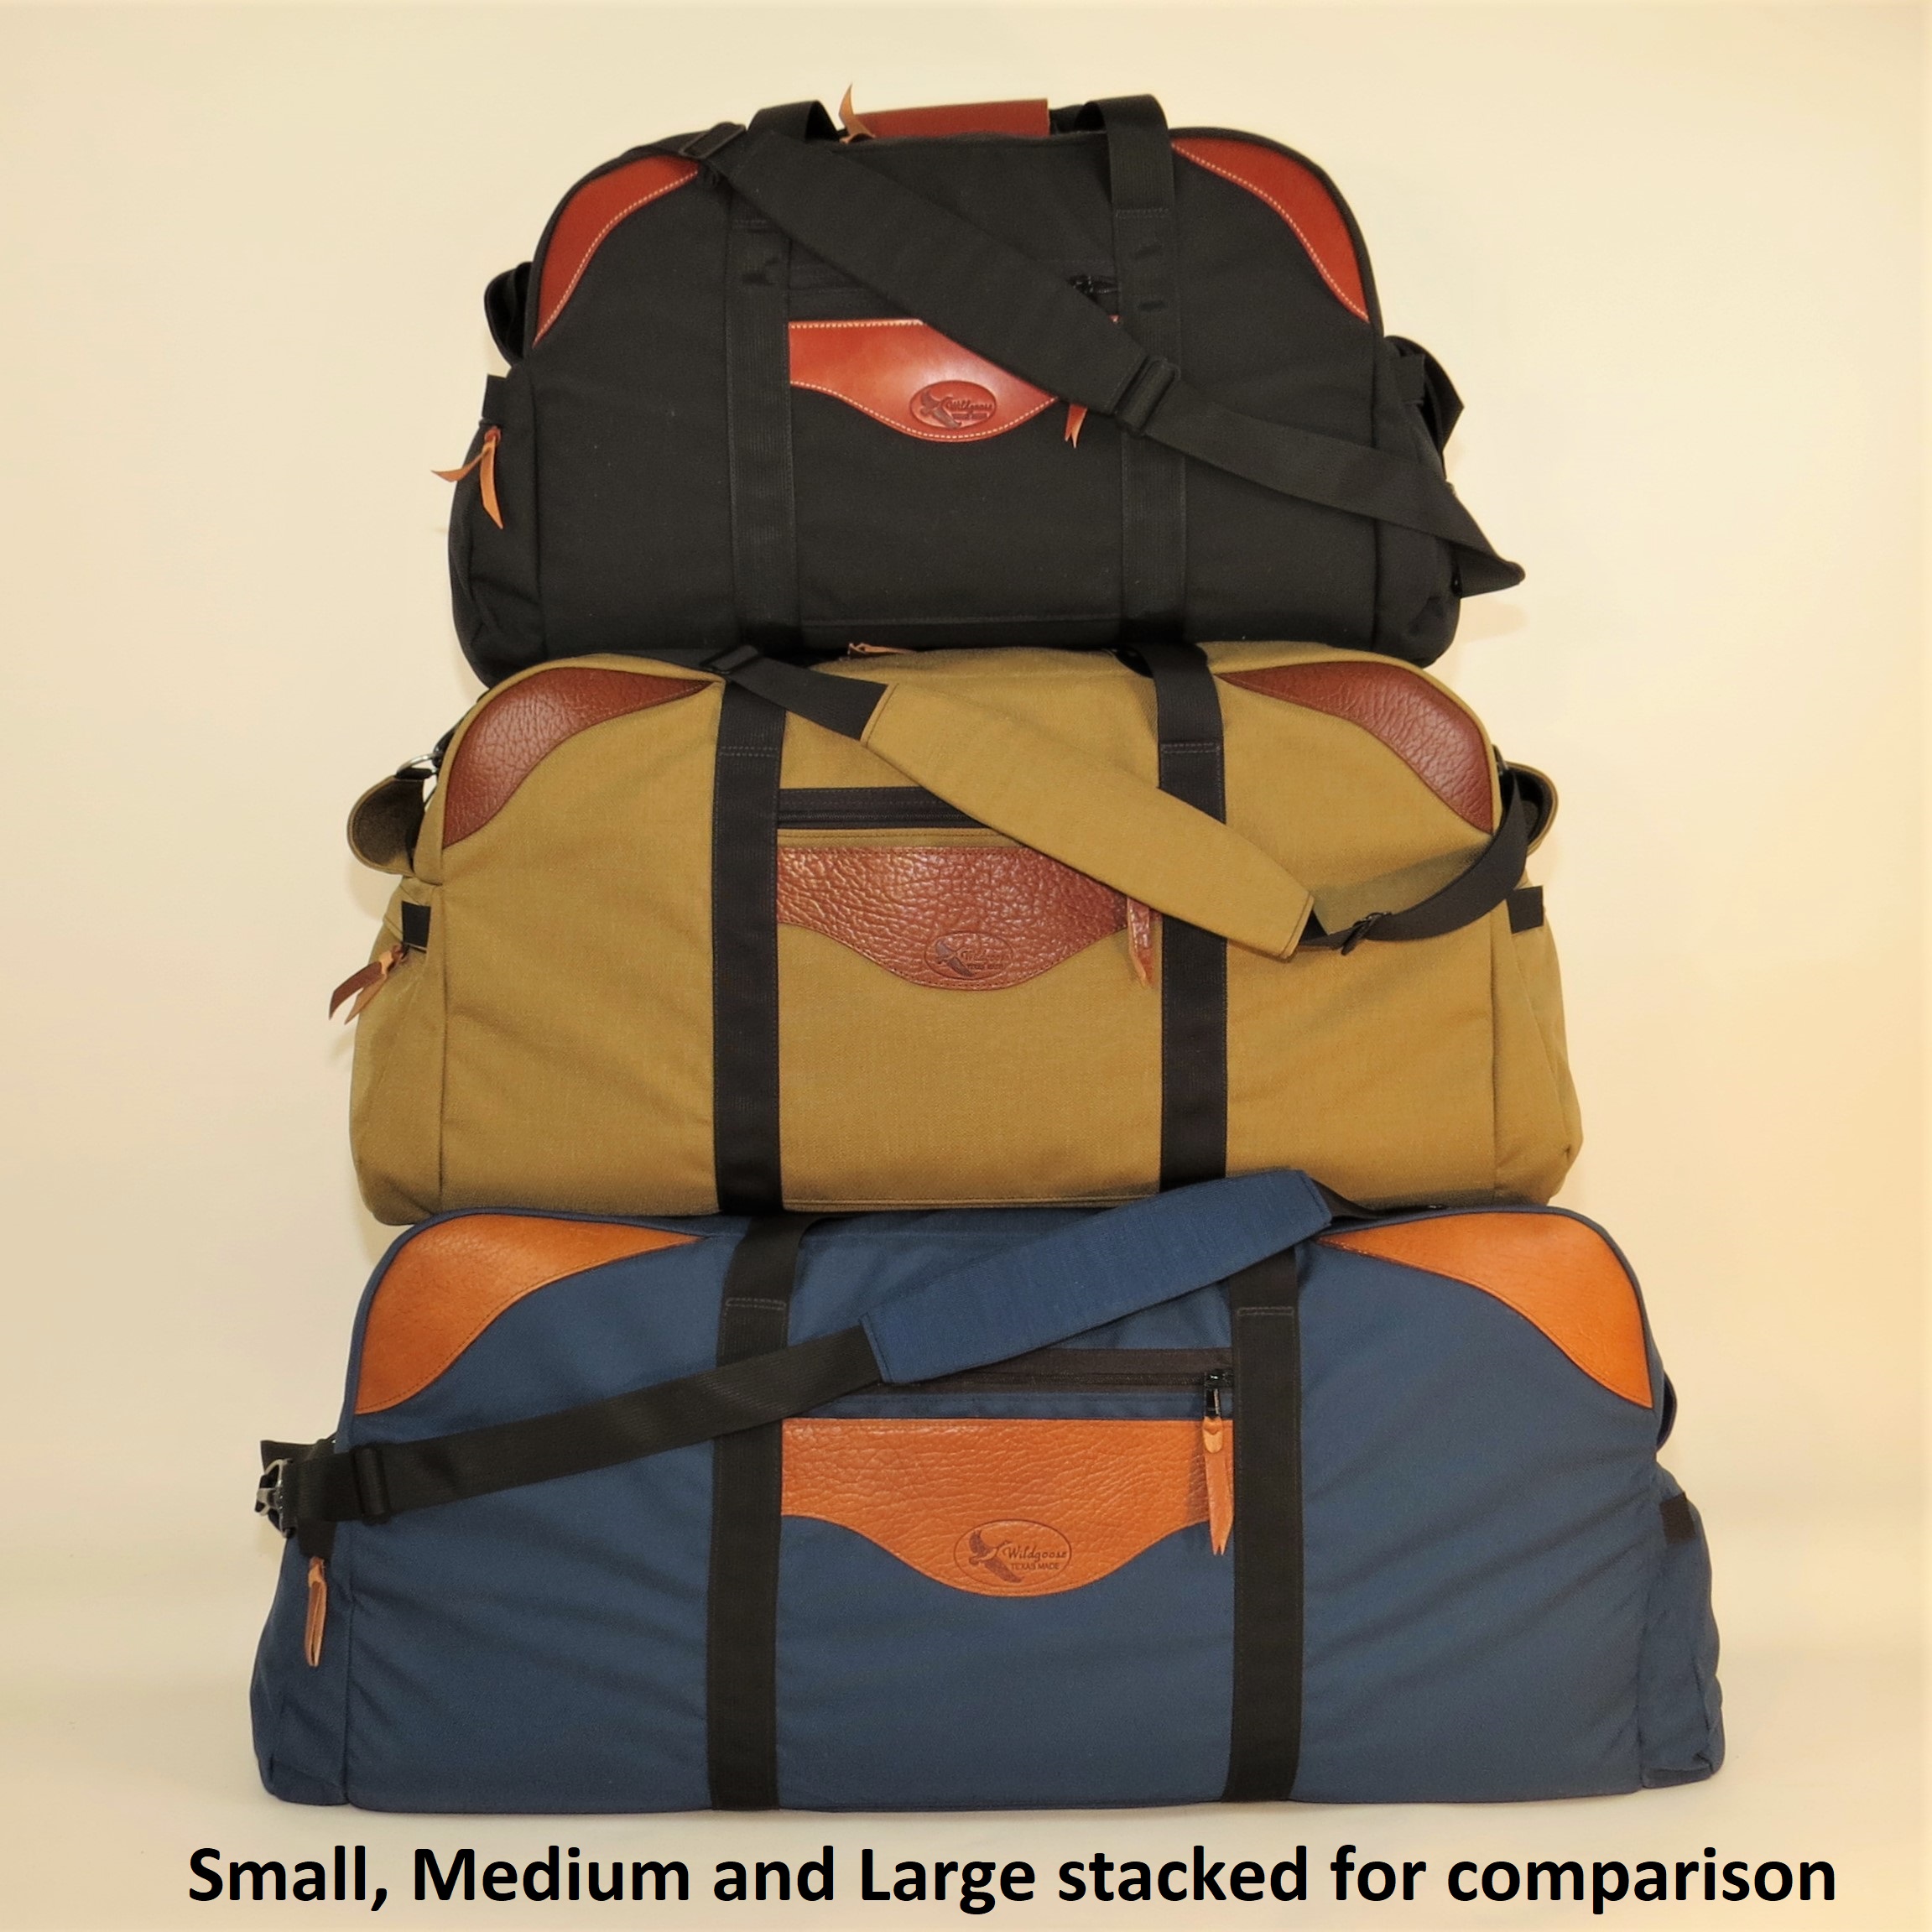 Cargo Luggage - Medium Original with Leather Trim